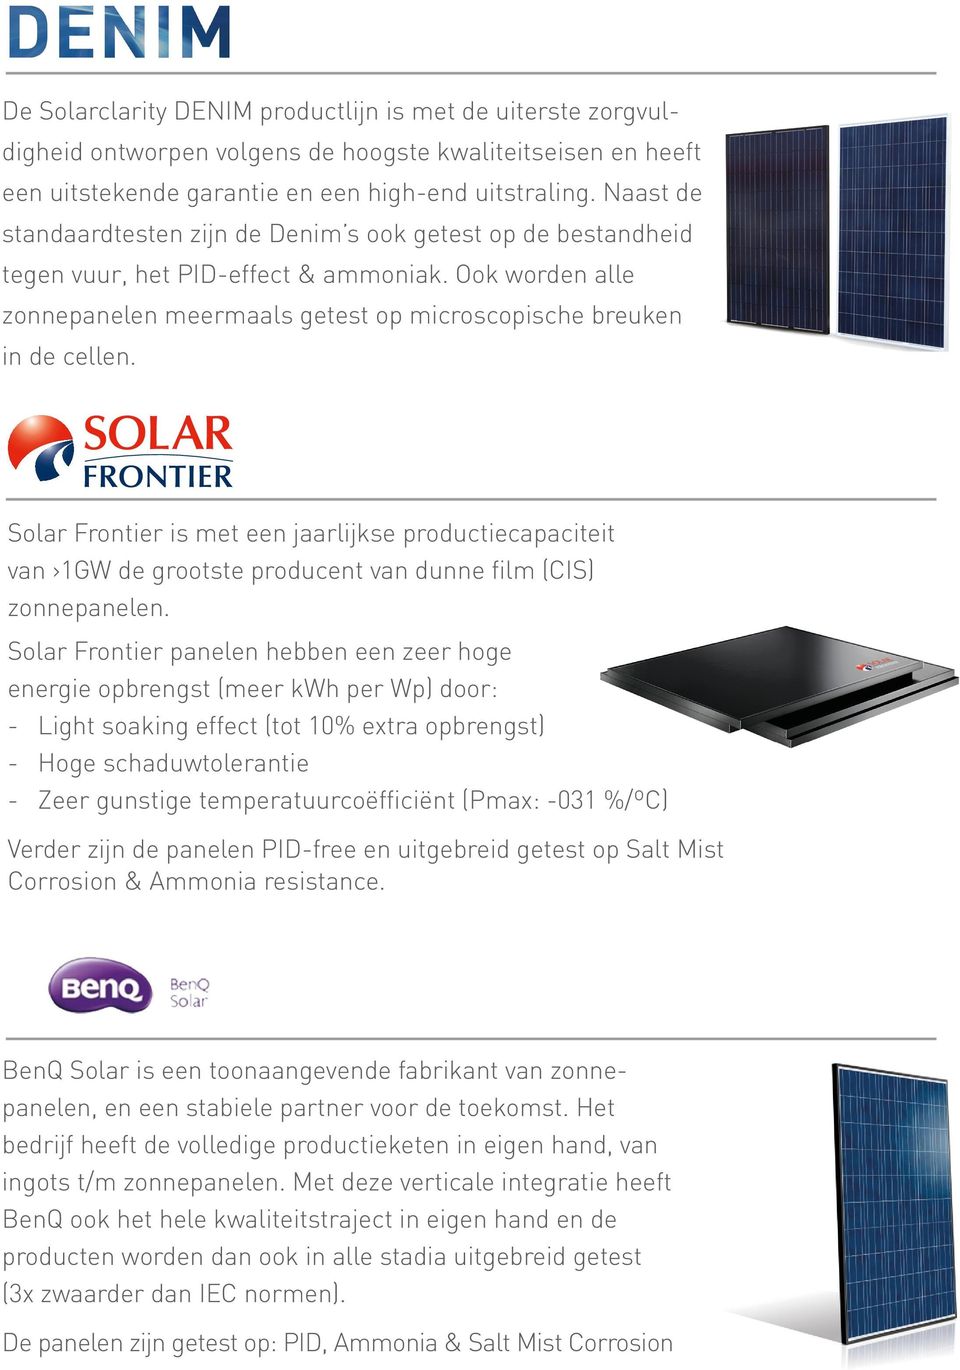 Solar Frontier is met een jaarlijkse productiecapaciteit van 1GW de grootste producent van dunne film (CIS) zonnepanelen.